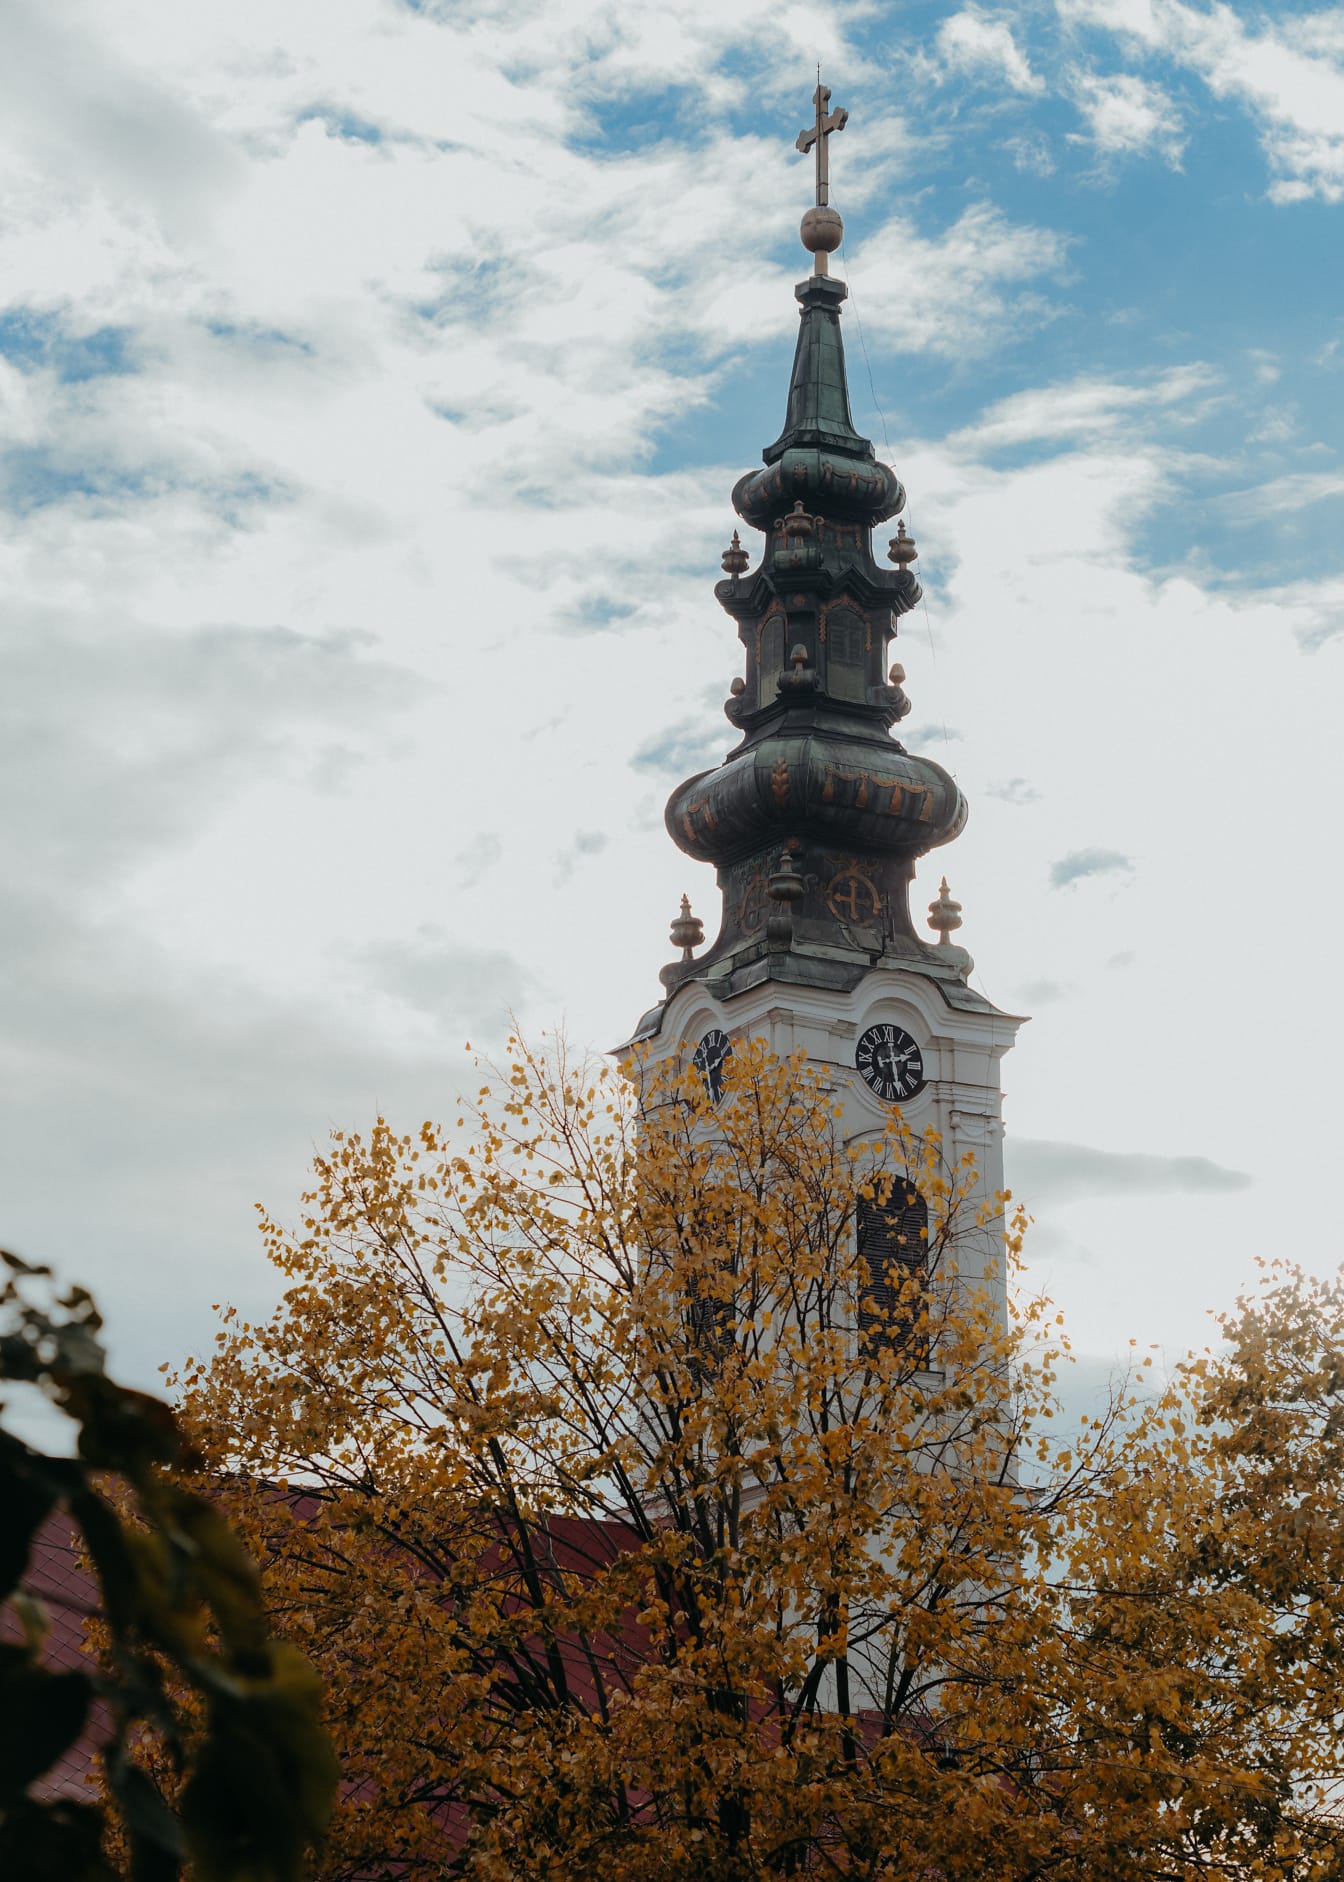 Servische orthodoxe kerktoren met blauwe hemel met wolken als achtergrond